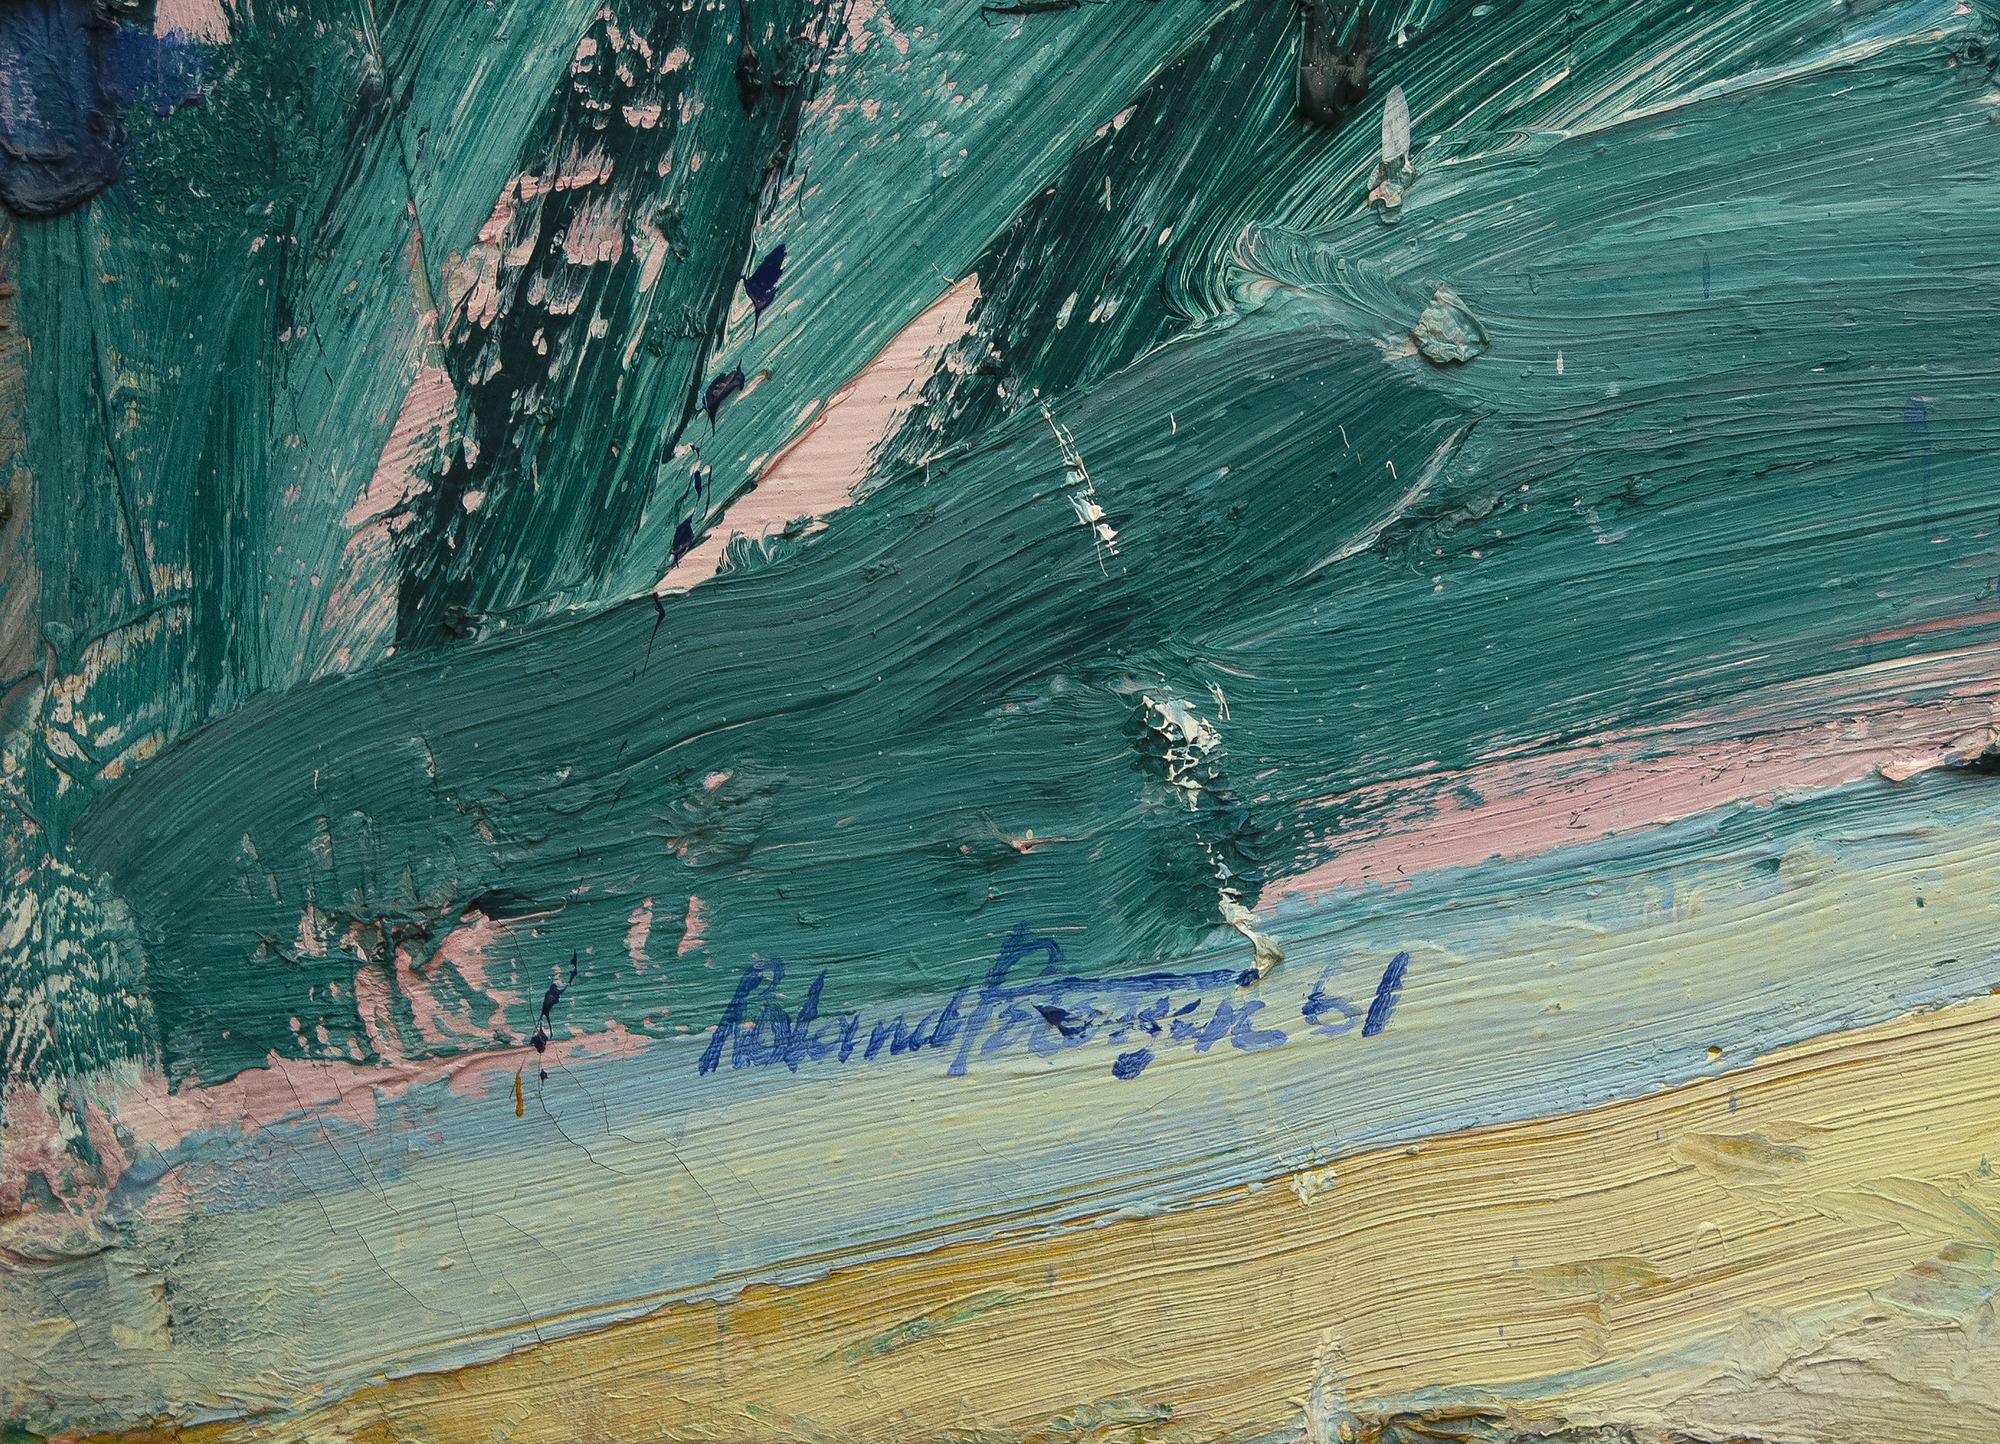 Le déjeuner de l'artiste de la région de la Baie Roland Petersen est une huile sur toile de 1961, une année critique pour sa série de pique-niques la plus connue. Son travail de cette période est caractérisé par un empâtement épais et une couleur riche. Profondément influencé par les études de Hans Hoffman, Petersen expérimente l'abstraction, mêlant ici des styles abstraits et figuratifs. Peint lorsque Petersen avait 35 ans, Luncheon s'inscrit dans un cadre temporel qui comprend son exposition personnelle à guichets fermés en 1962 à la Staempfli Gallery de New York, son exposition personnelle à Esther-Robles à Los Angeles et la bourse Guggenheim Fellowship qui lui a permis d'étudier à Paris.